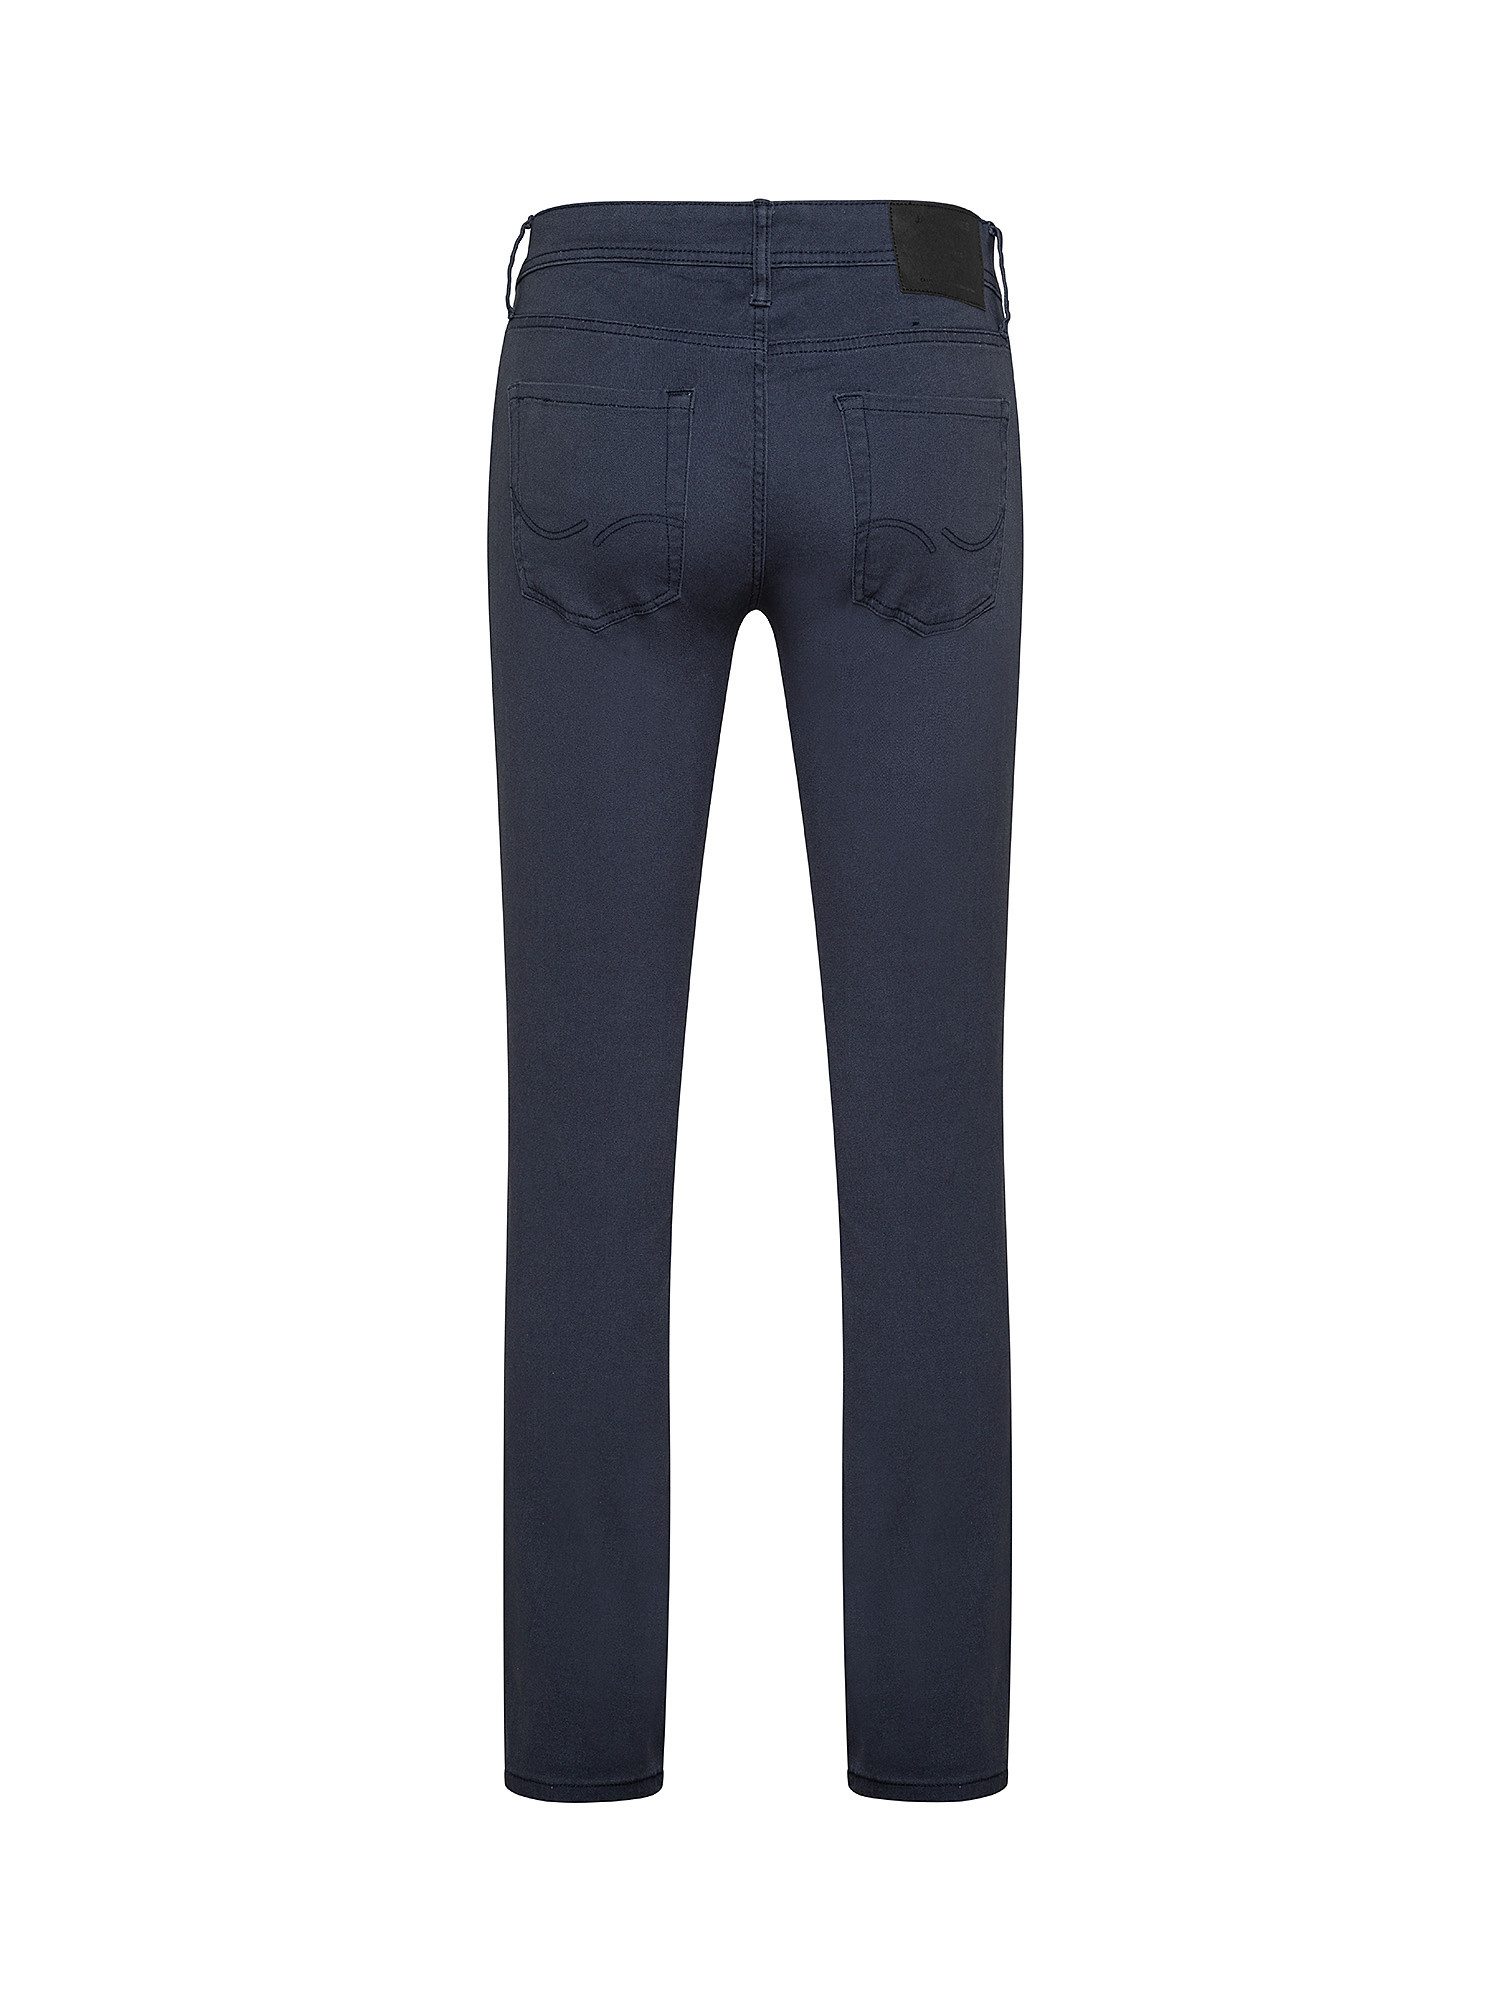 Pantalone, Blu scuro, large image number 1